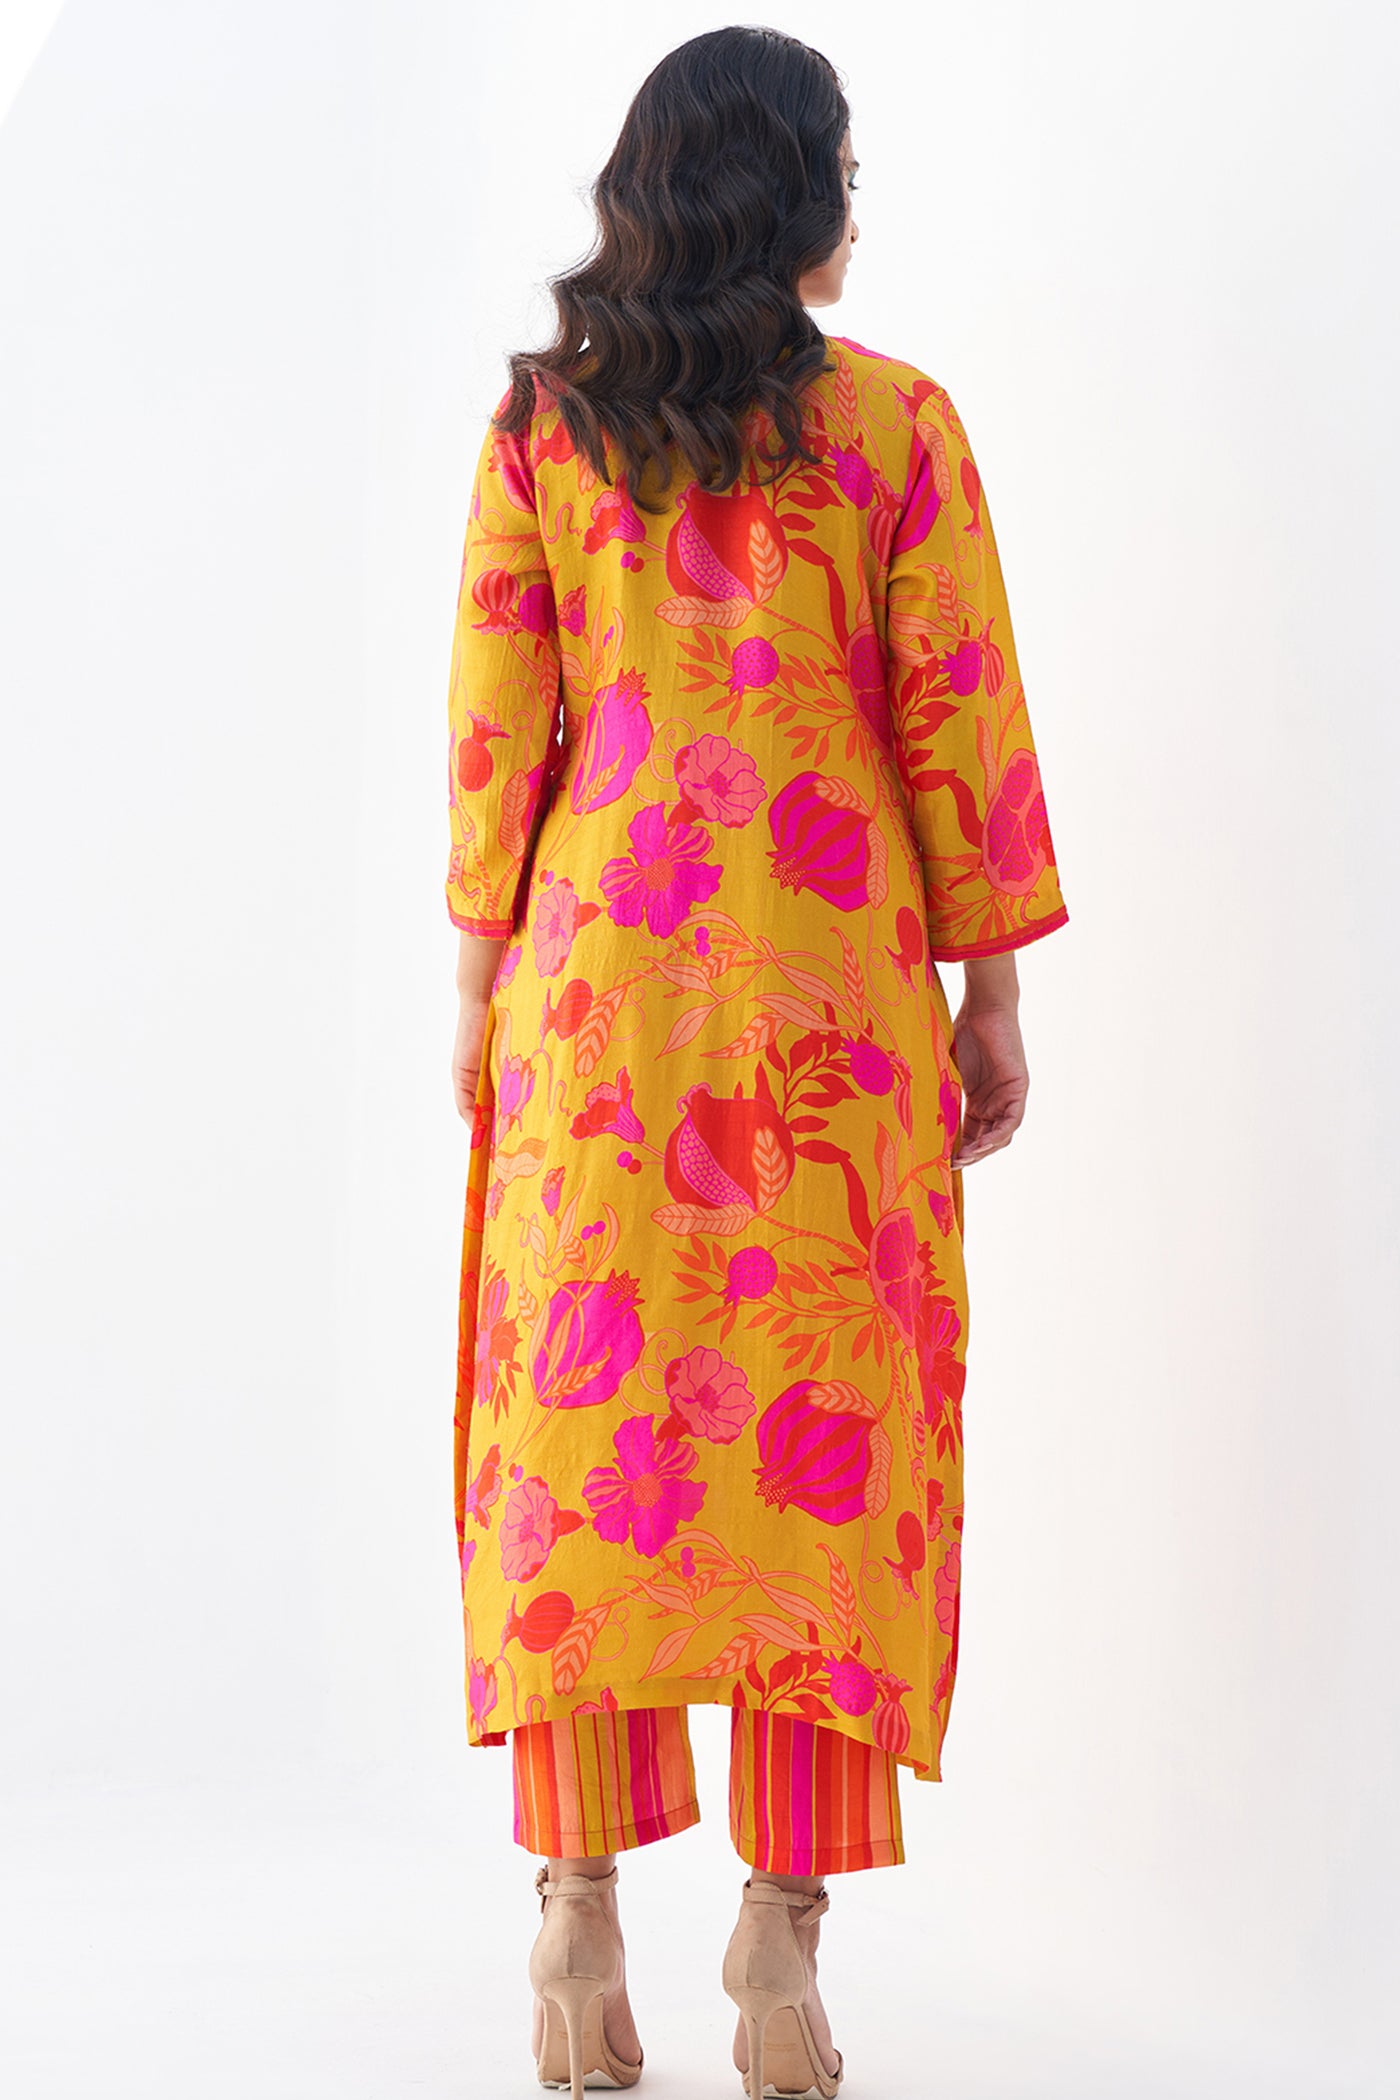 Archana Shah Yellow Pomo Neck Emb Kurta Set indian designer wear online shopping melange singapore